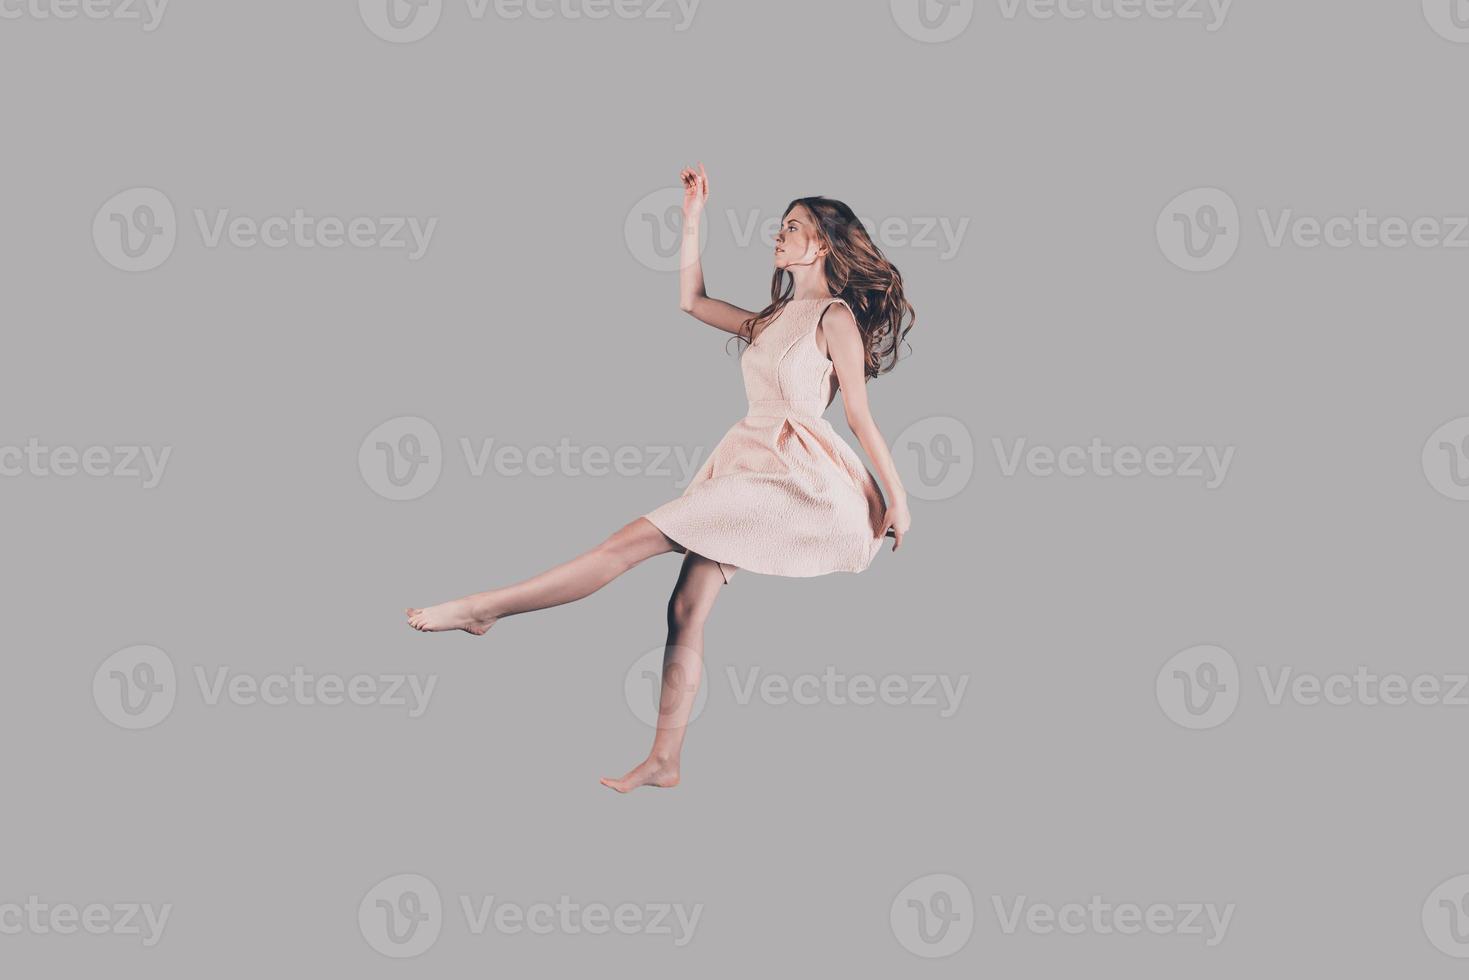 sa vie en mouvement. prise de vue en studio d'une jeune femme attirante planant dans l'air photo